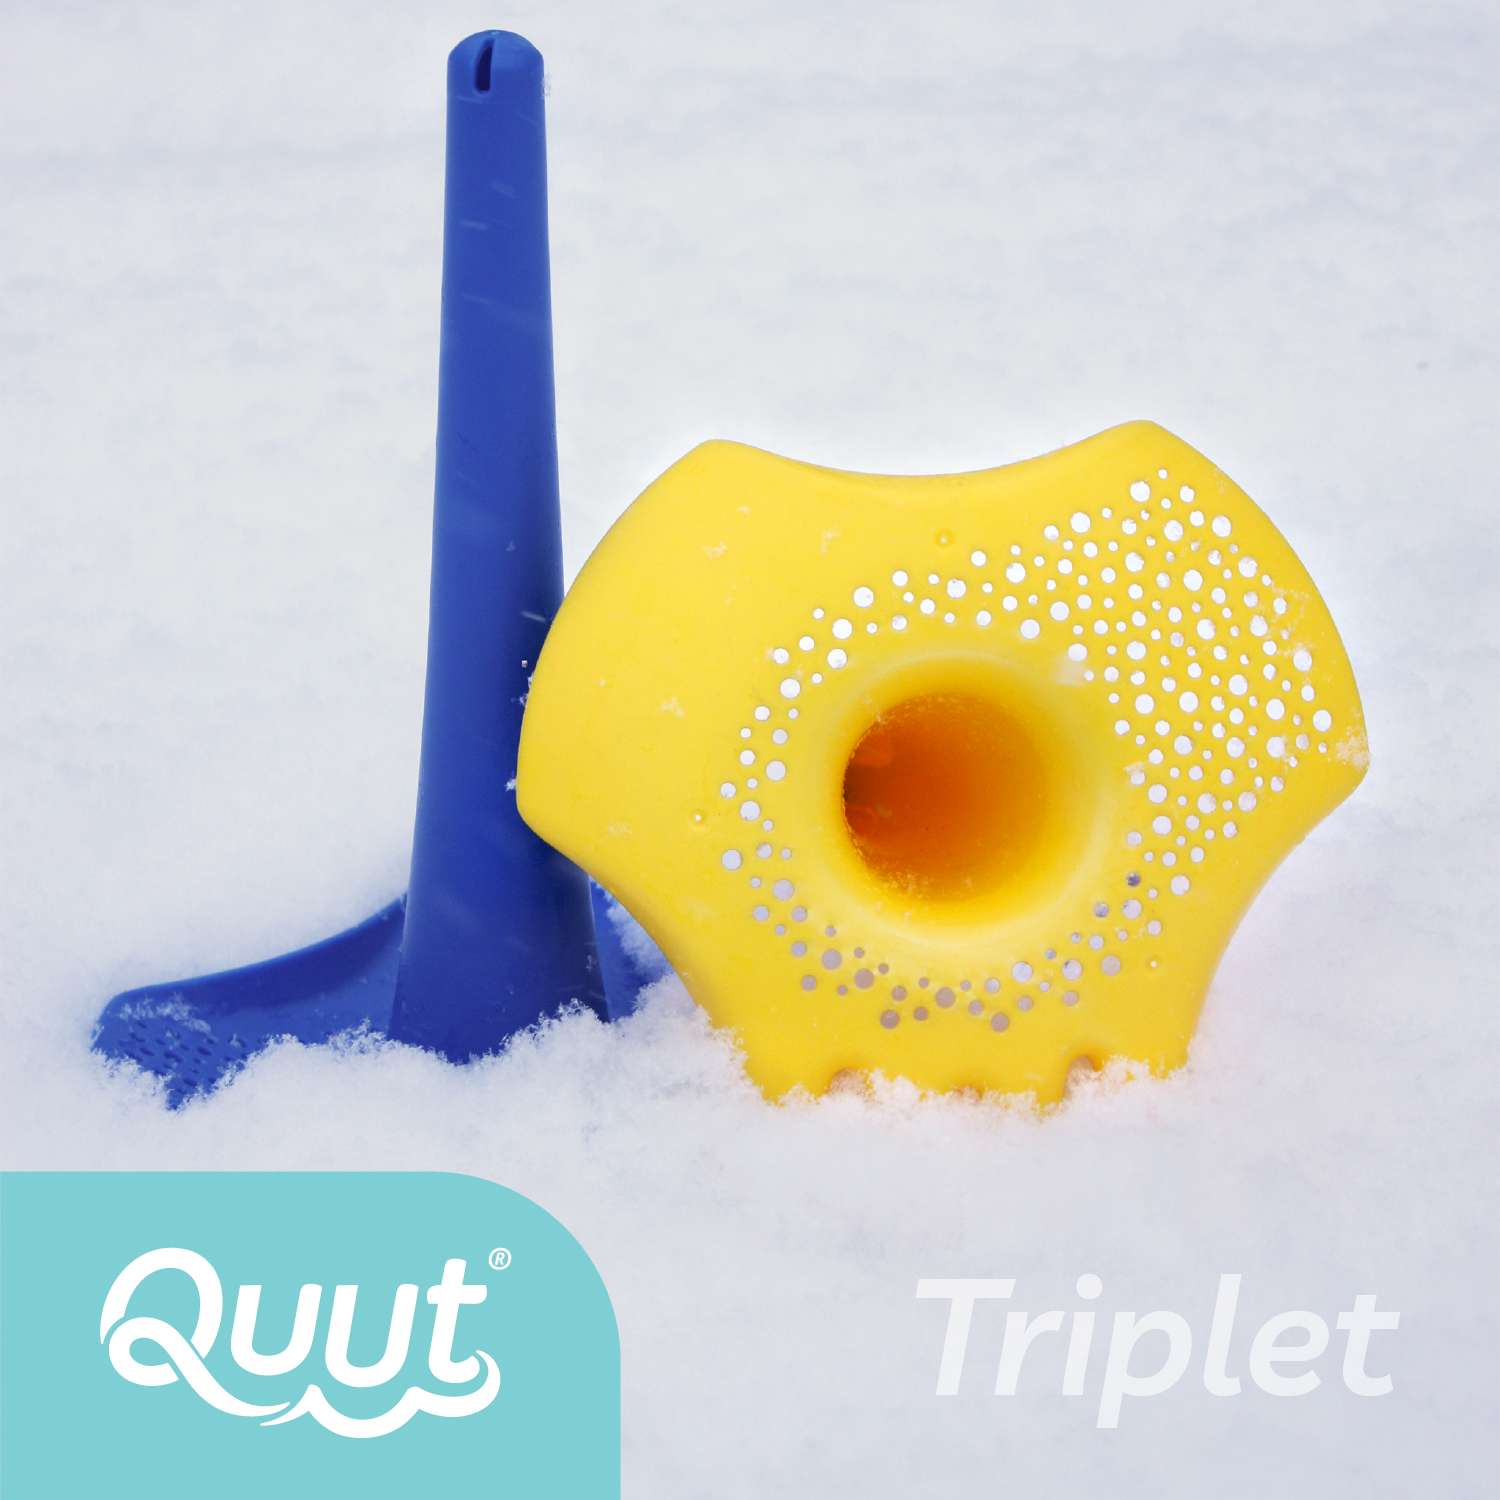 Игрушка для песка и снега QUUT многофункциональная Triplet Винтажный синий - фото 6